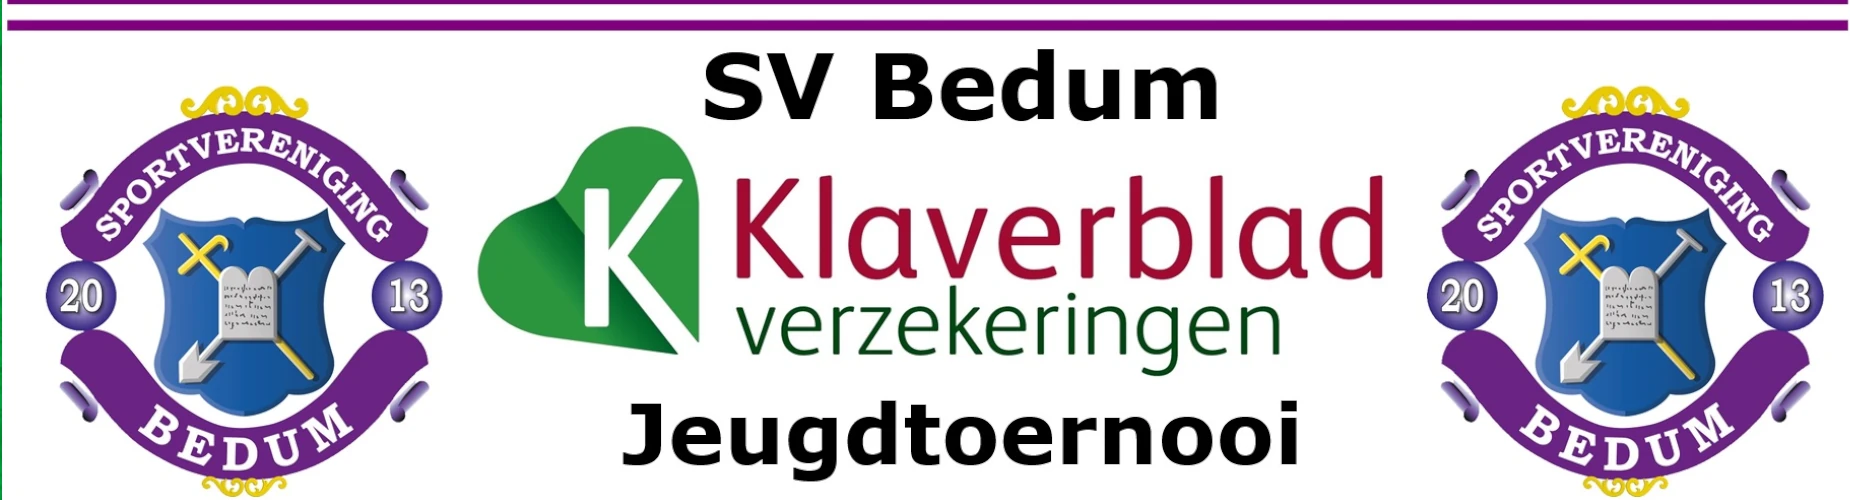 Banner - MO17 - sv Bedum Klaverblad Verzekeringen Jeugdtoernooi - SV Bedum - Bedum